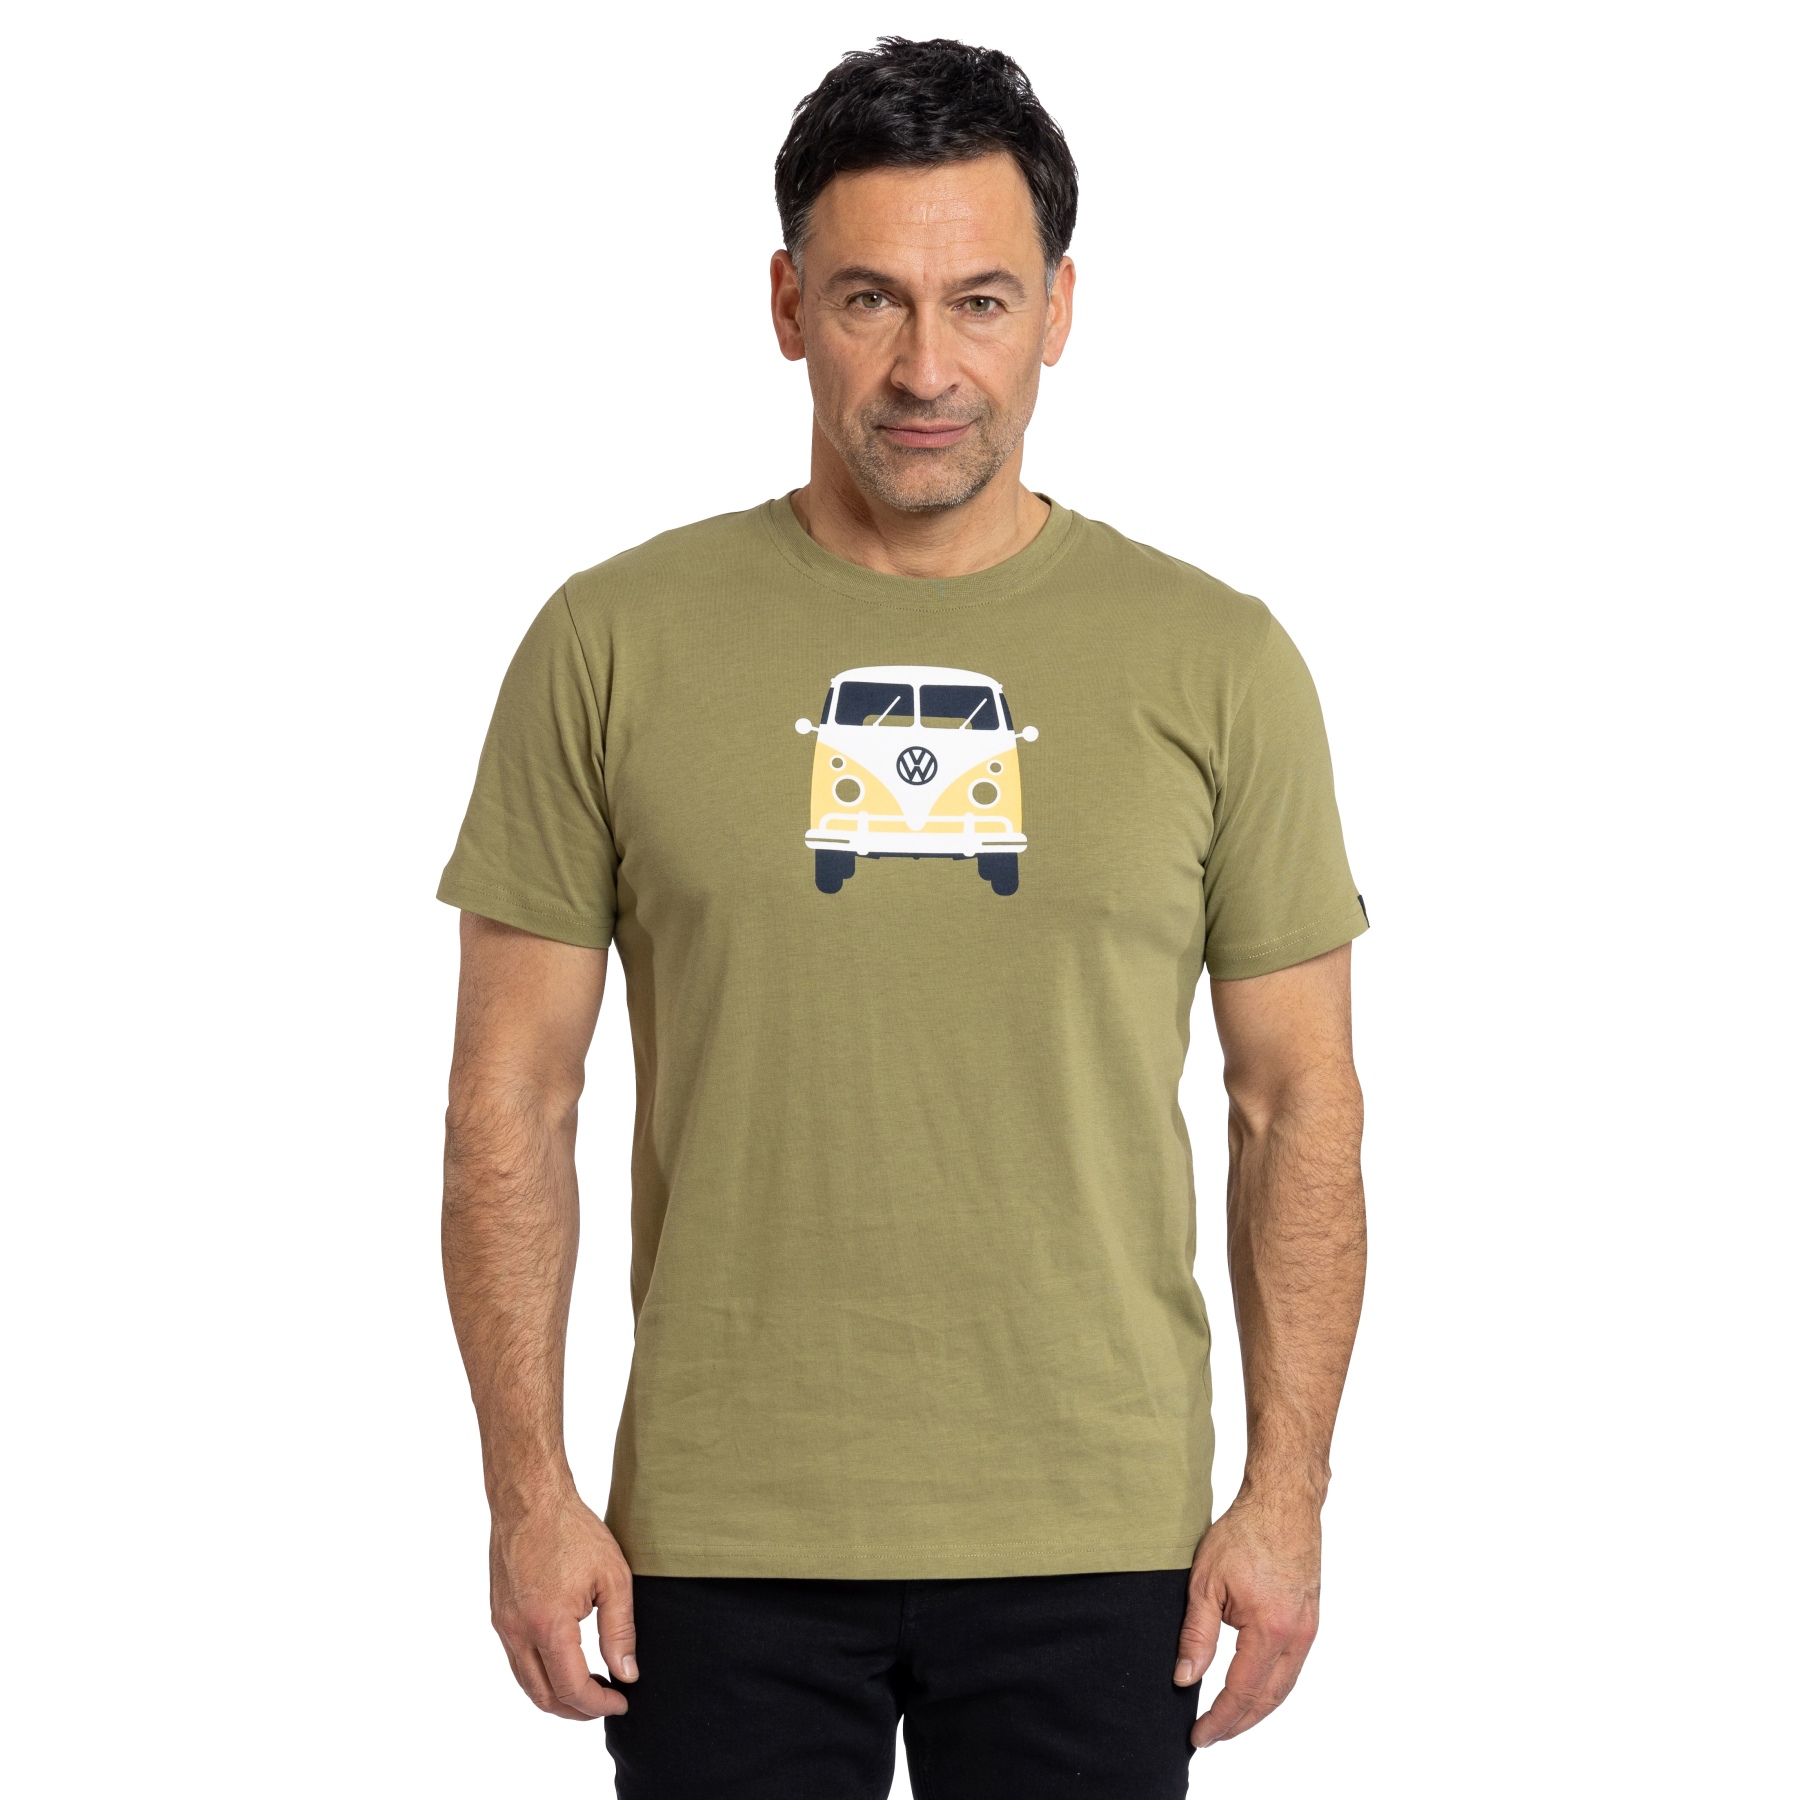 Produktbild von Elkline METHUSALEM T-Shirt Herren - Lizensiert von VW - avocado